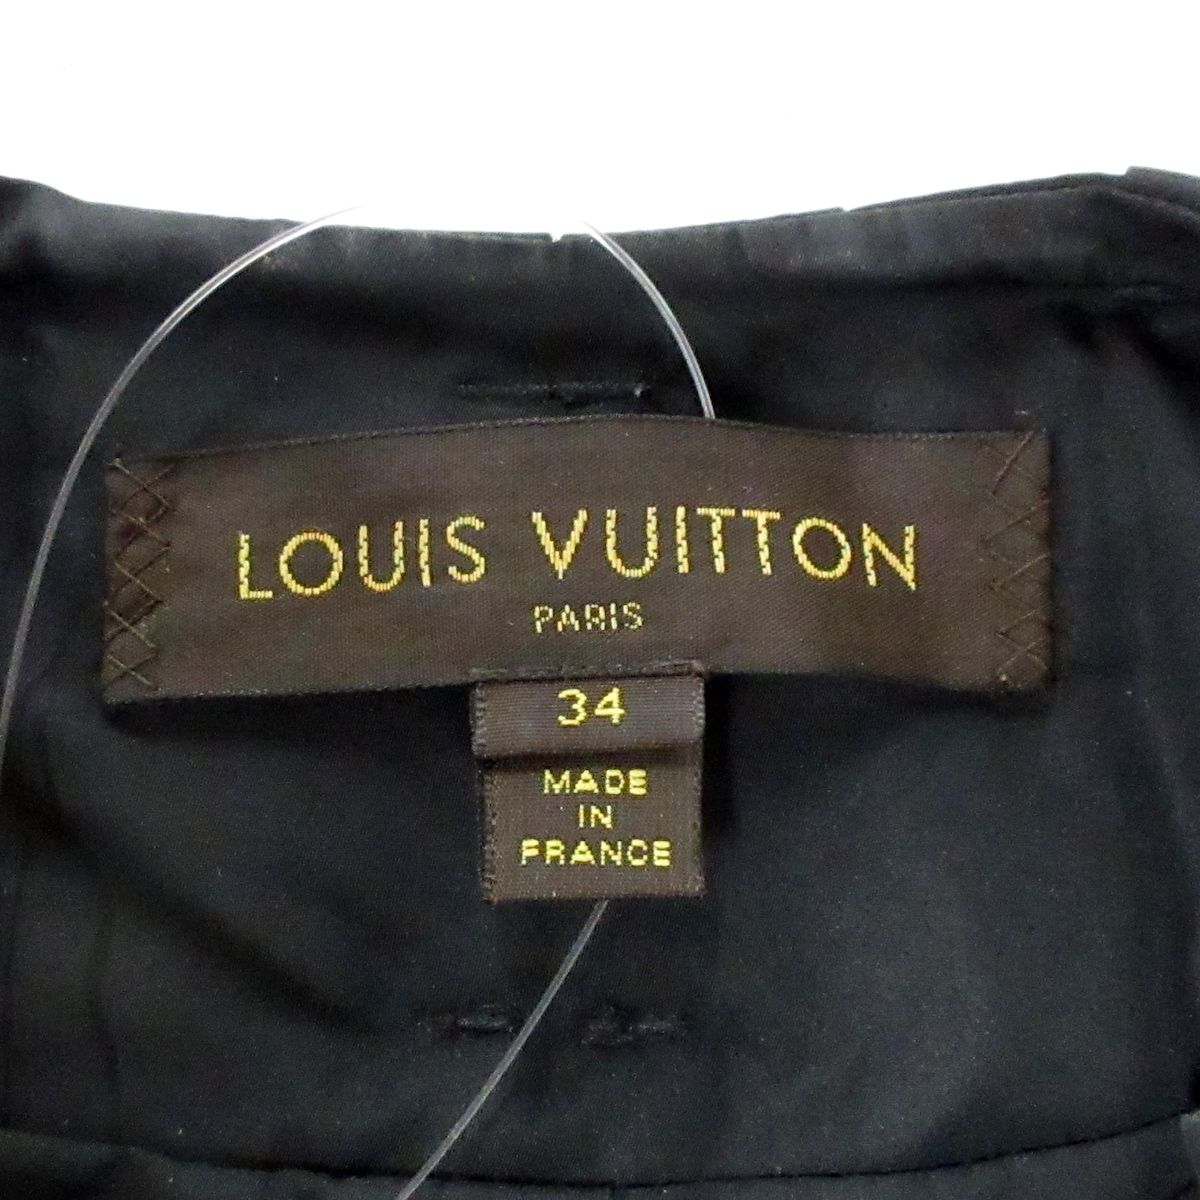 LOUIS VUITTON(ルイヴィトン) トレンチコート サイズ34 S レディース - 黒 長袖